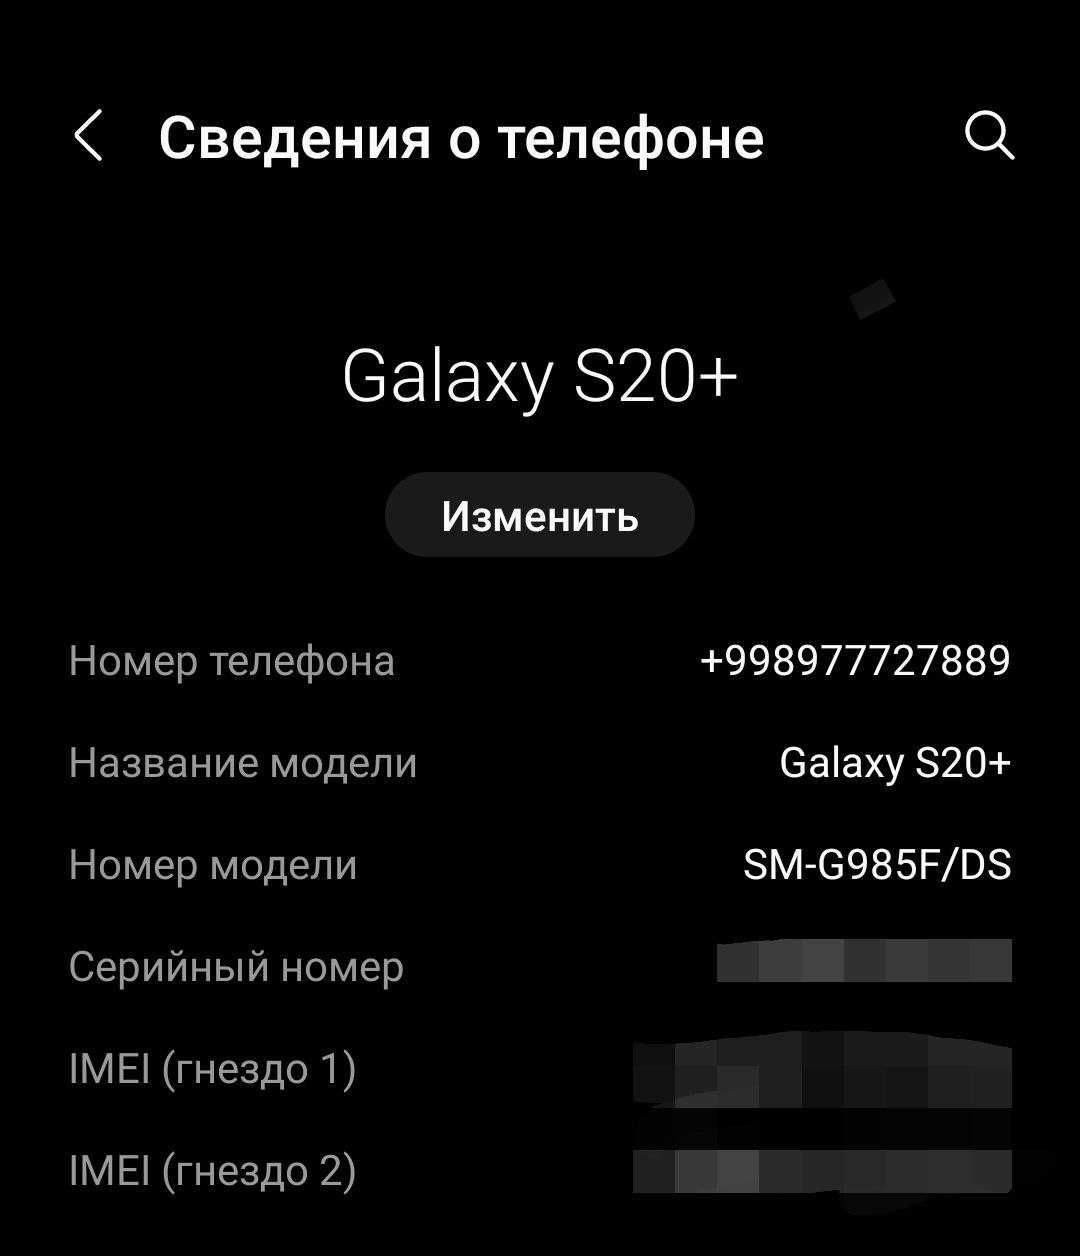 Samsung S20 Plus 128Gb DUAL SIM запись разговоров есть обмен